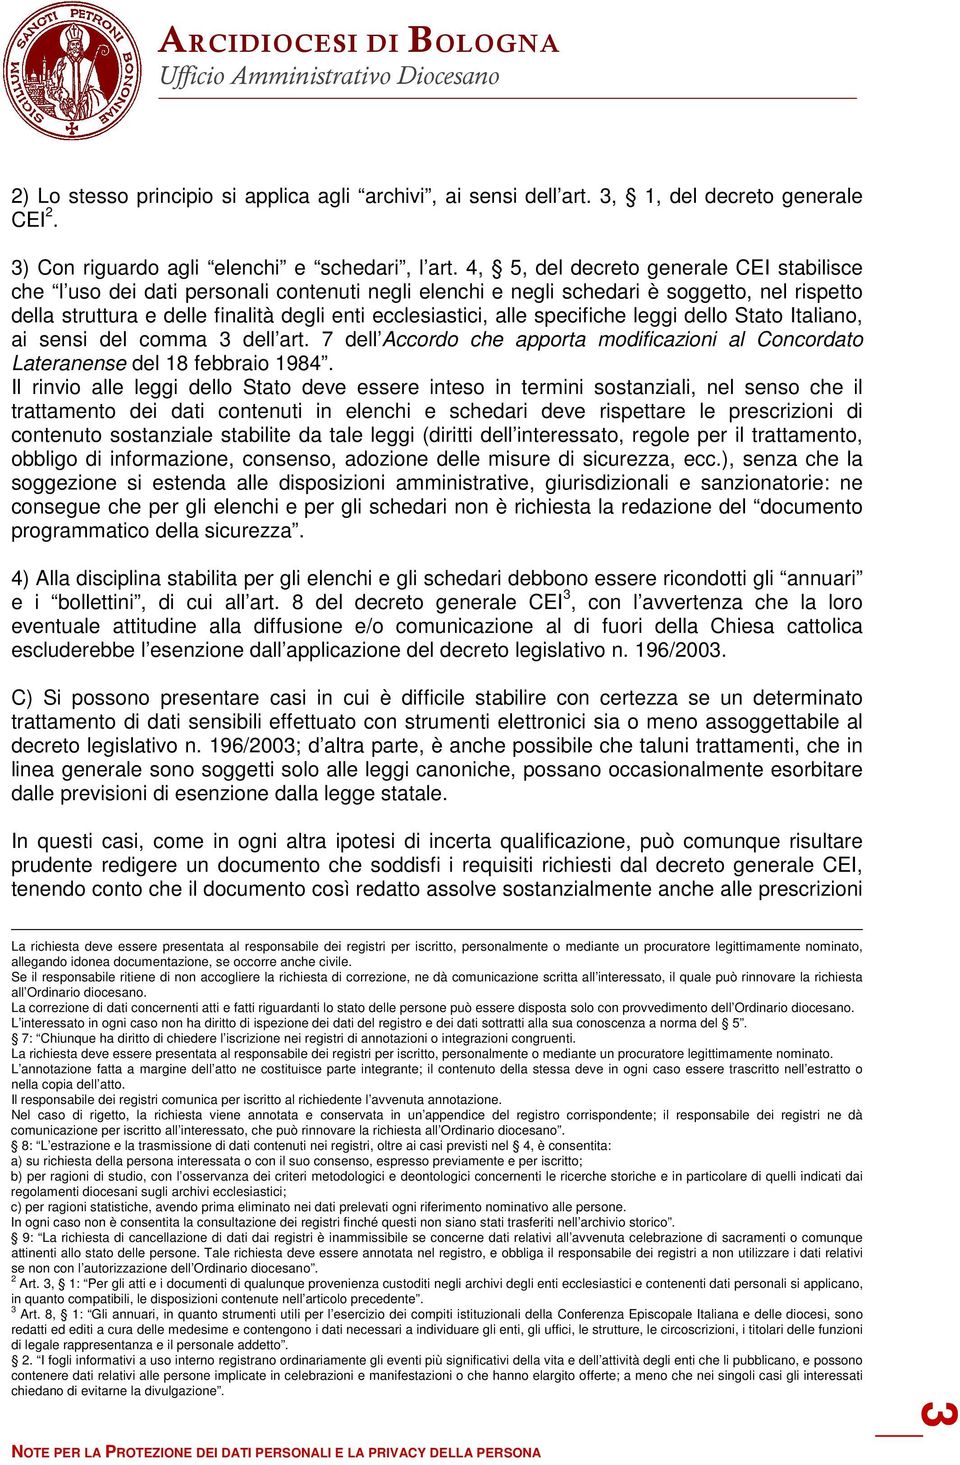 alle specifiche leggi dello Stato Italiano, ai sensi del comma 3 dell art. 7 dell Accordo che apporta modificazioni al Concordato Lateranense del 18 febbraio 1984.